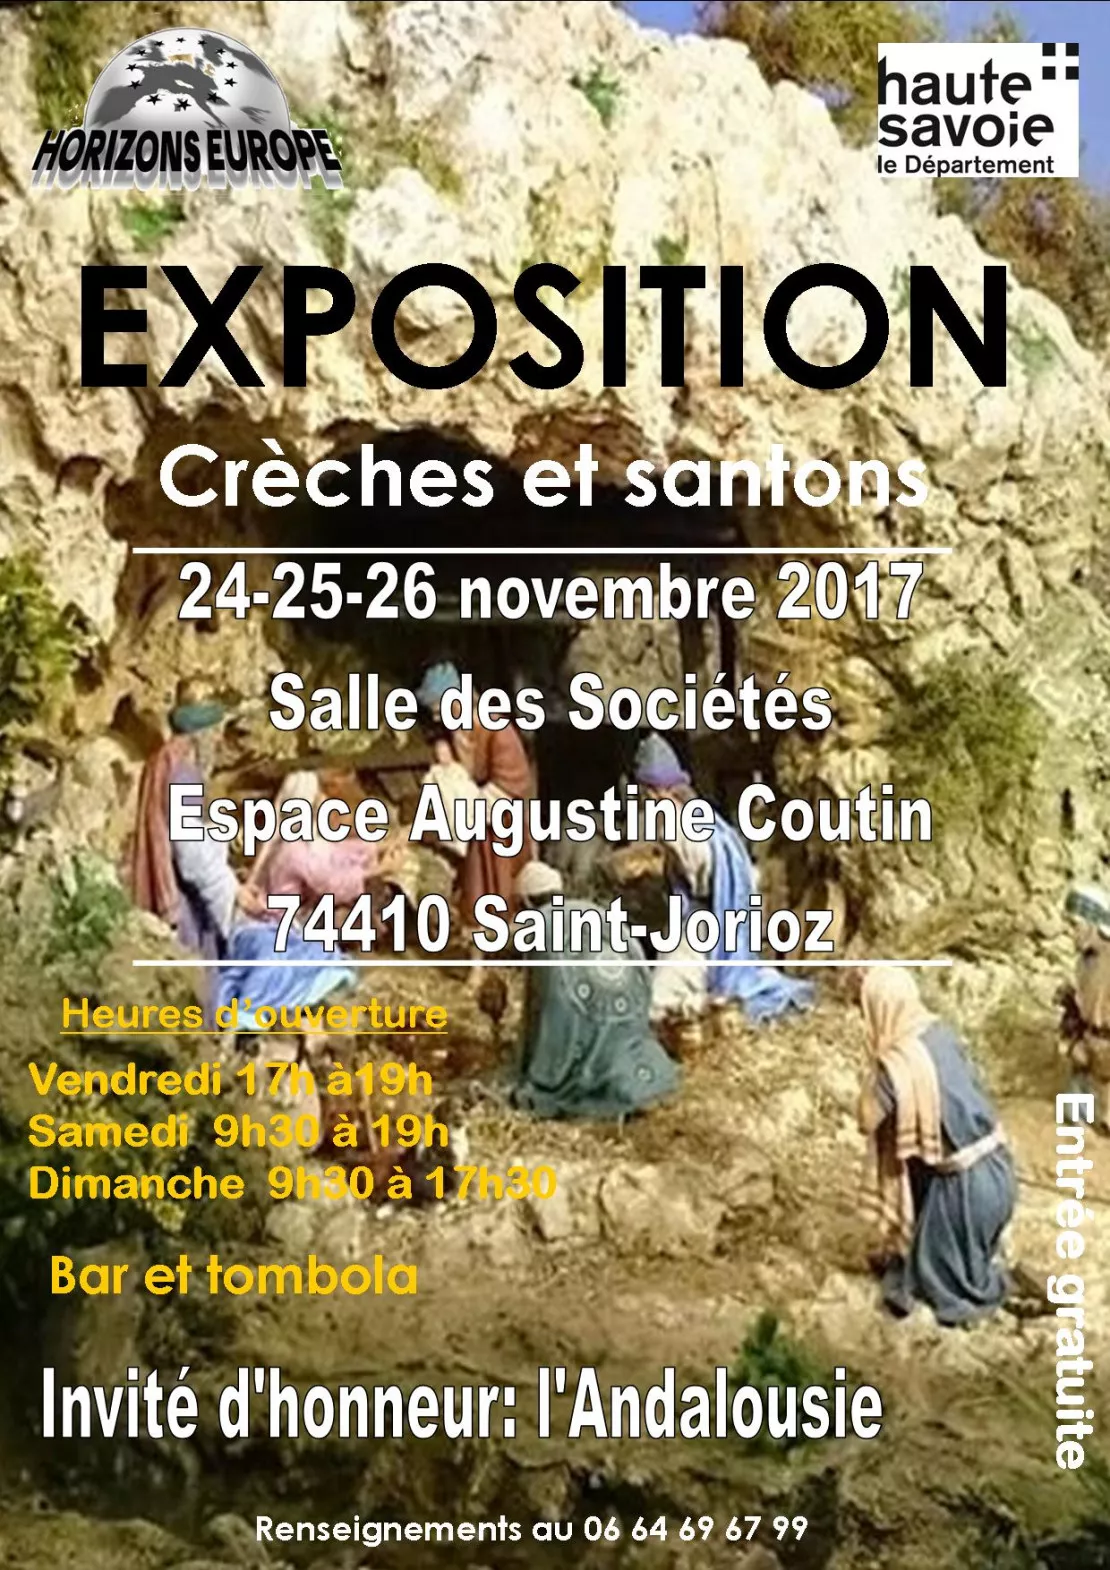 SAINT-JORIOZ - EXPOSITION-VENTE DE CRÈCHES ET SANTONS